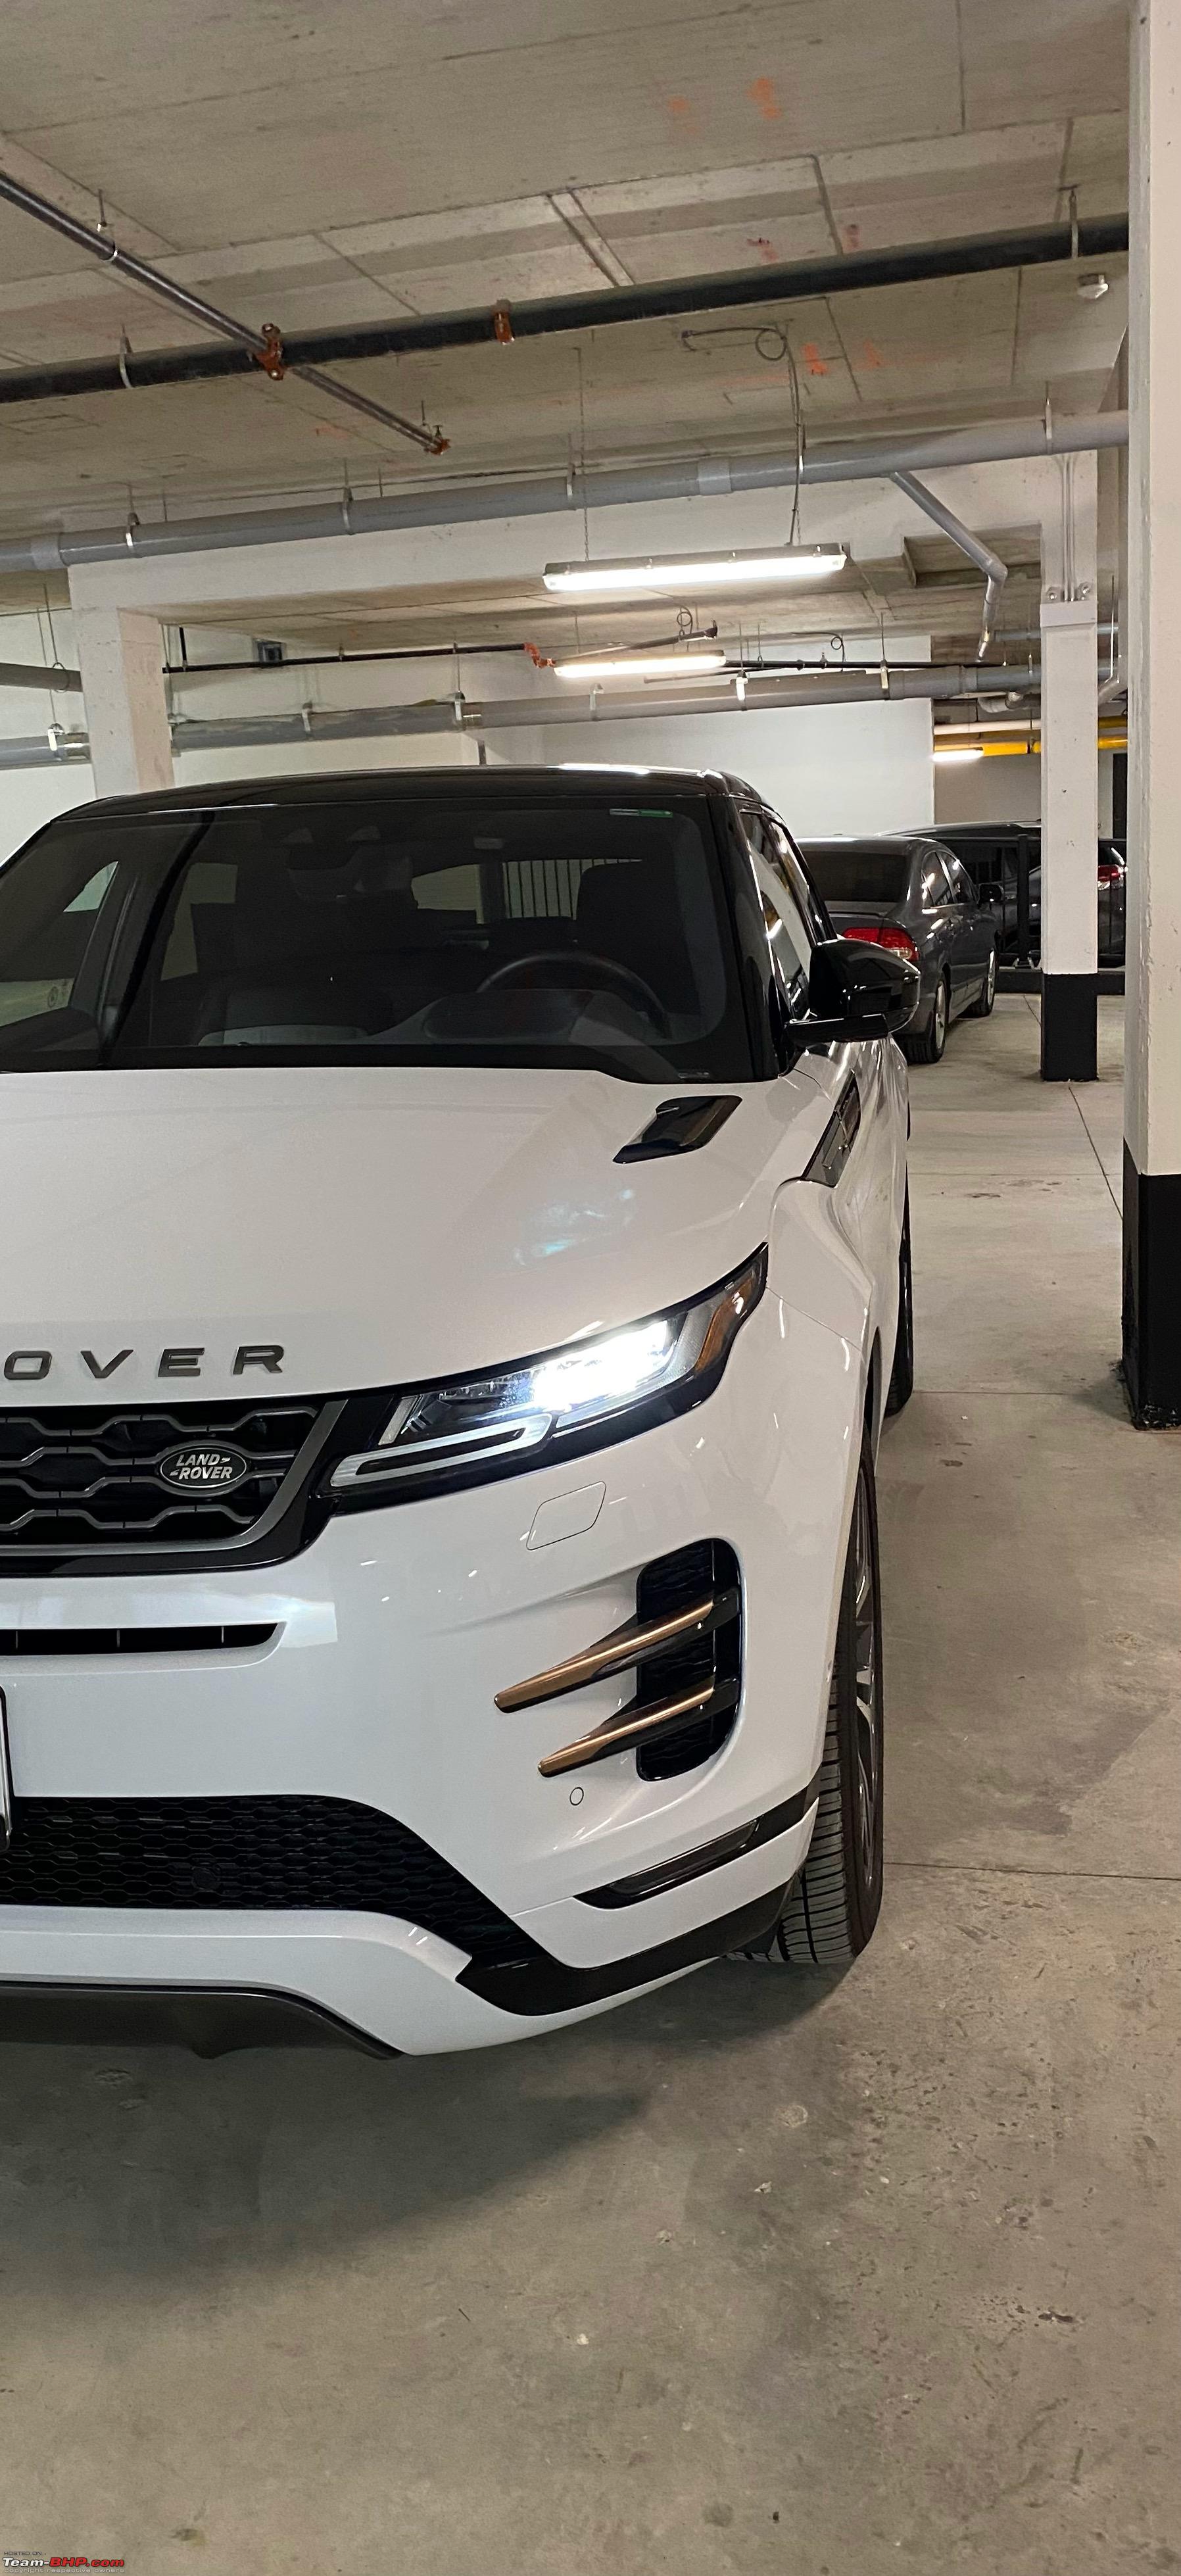 Range Rover Evoque, Land Rover Reviews